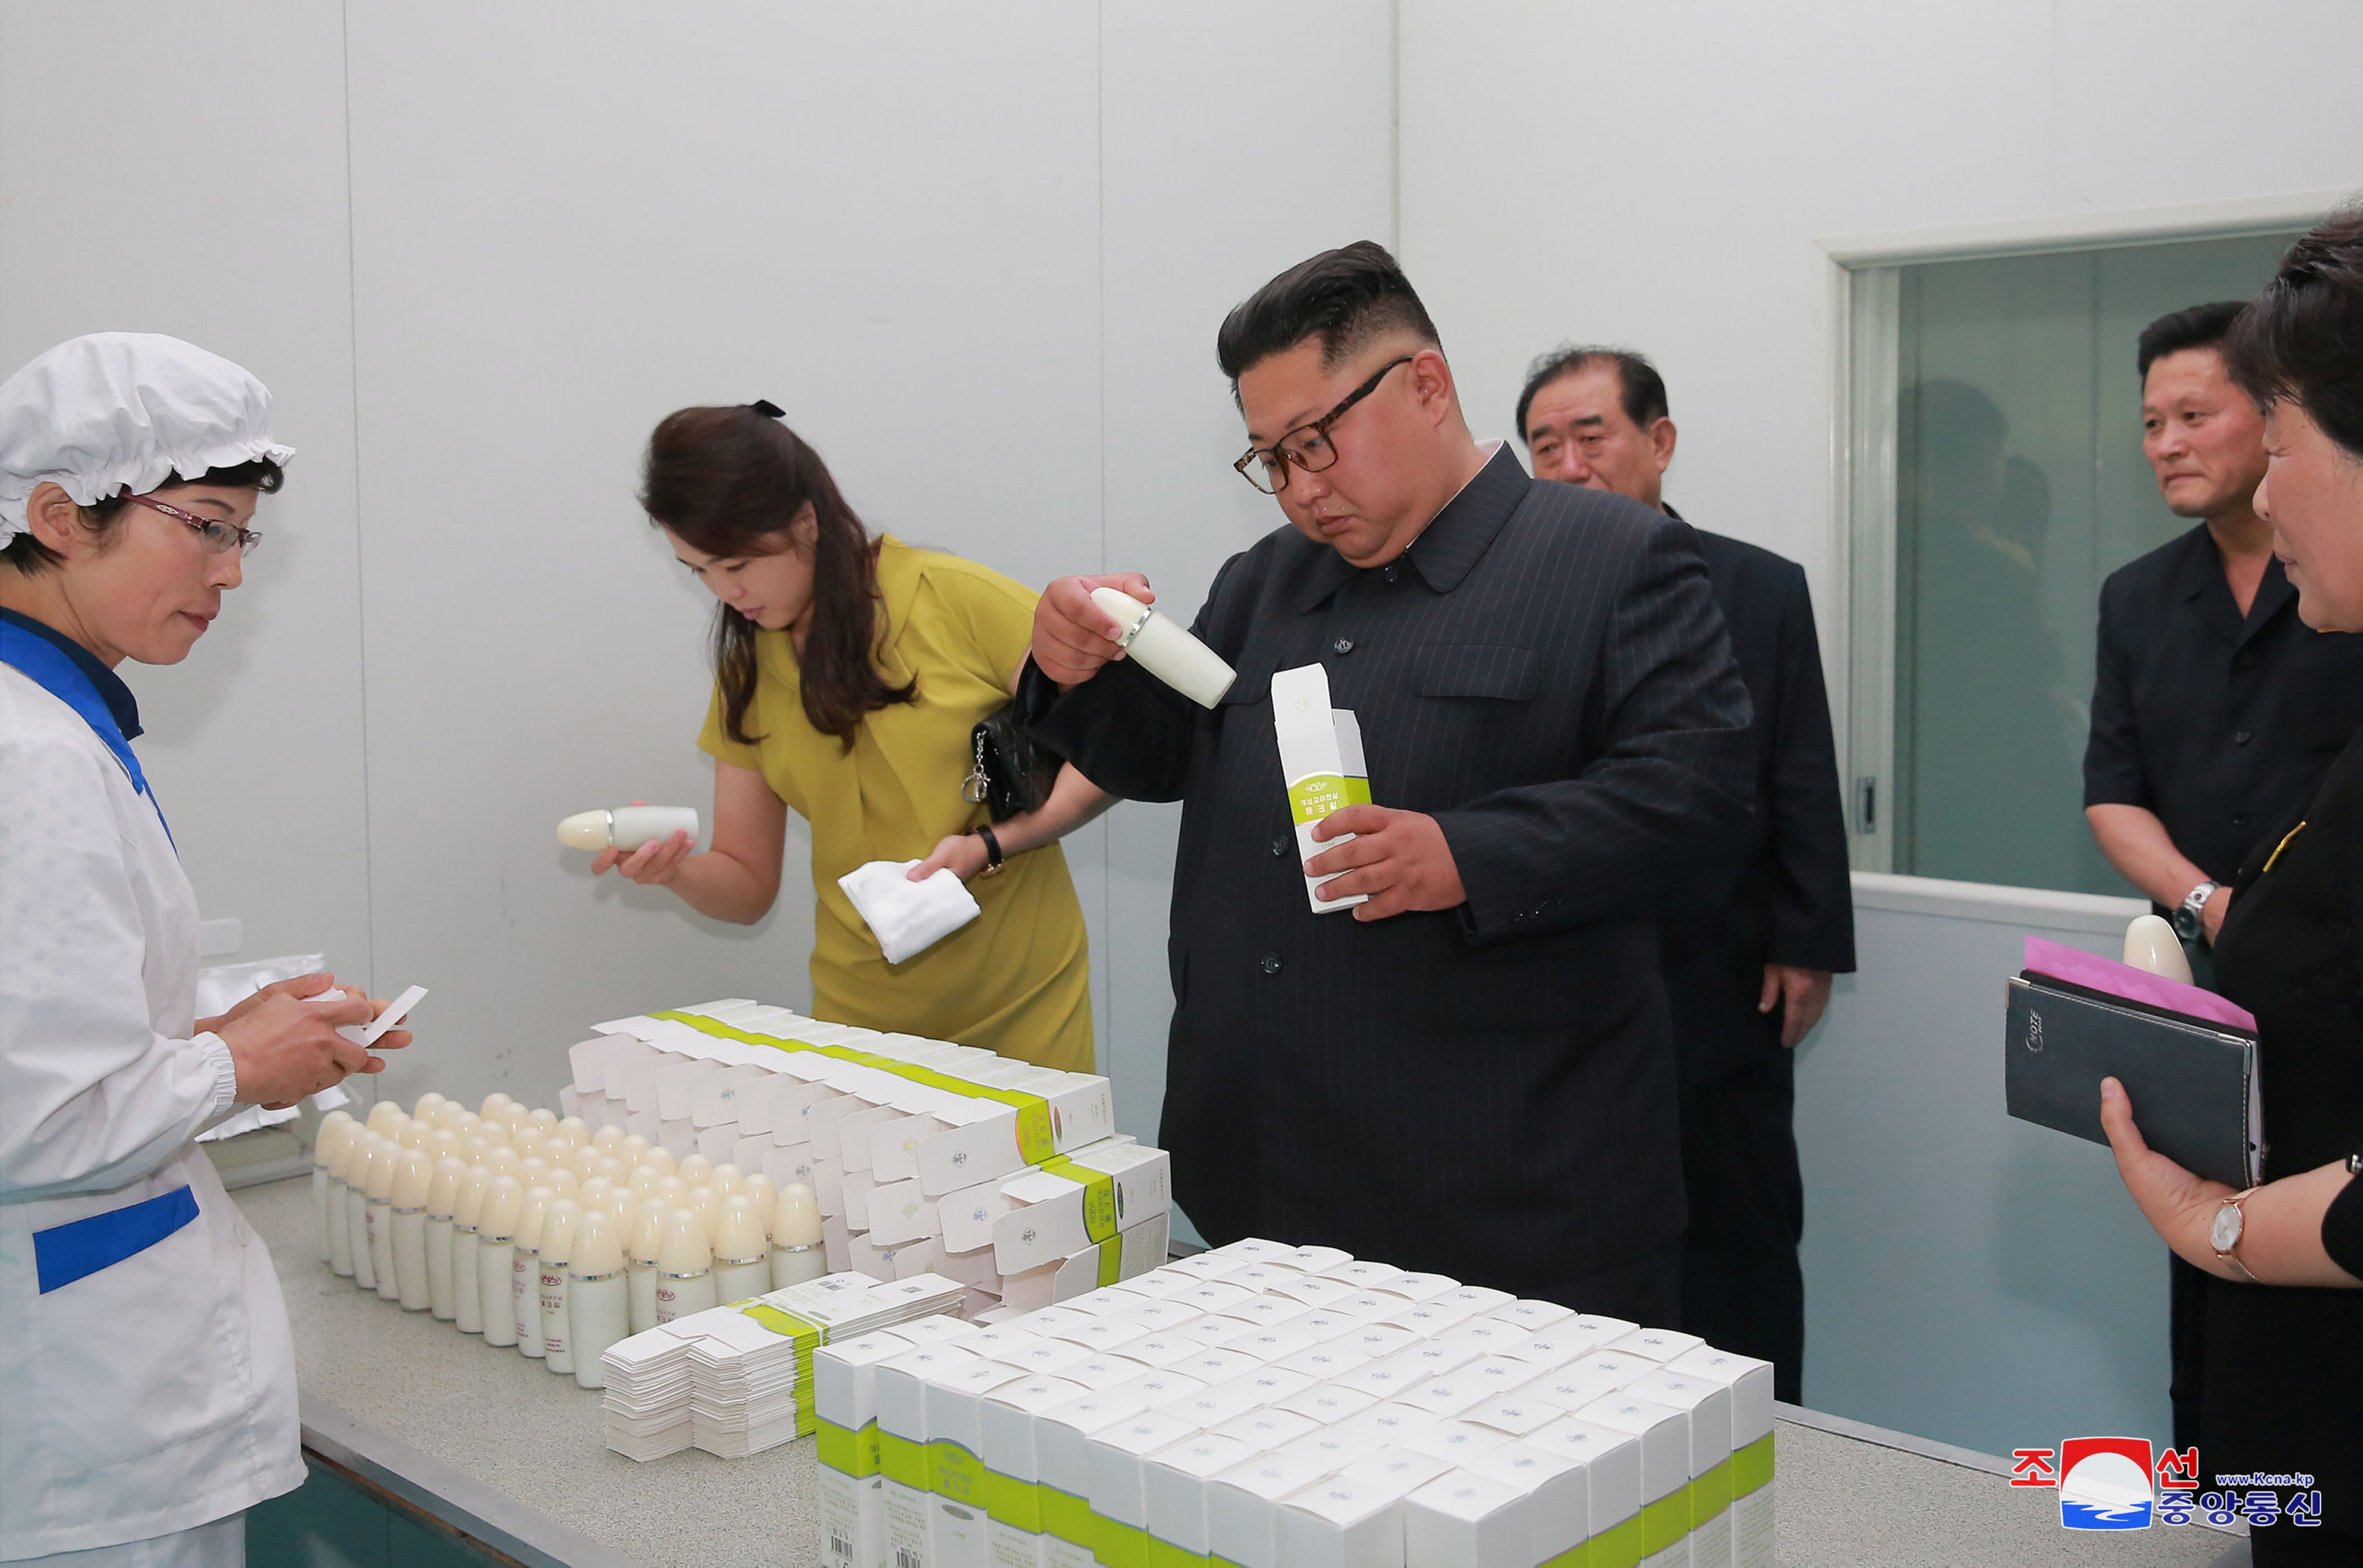 زعيم كوريا الشمالية وزوجته يتفقدان المنتجات